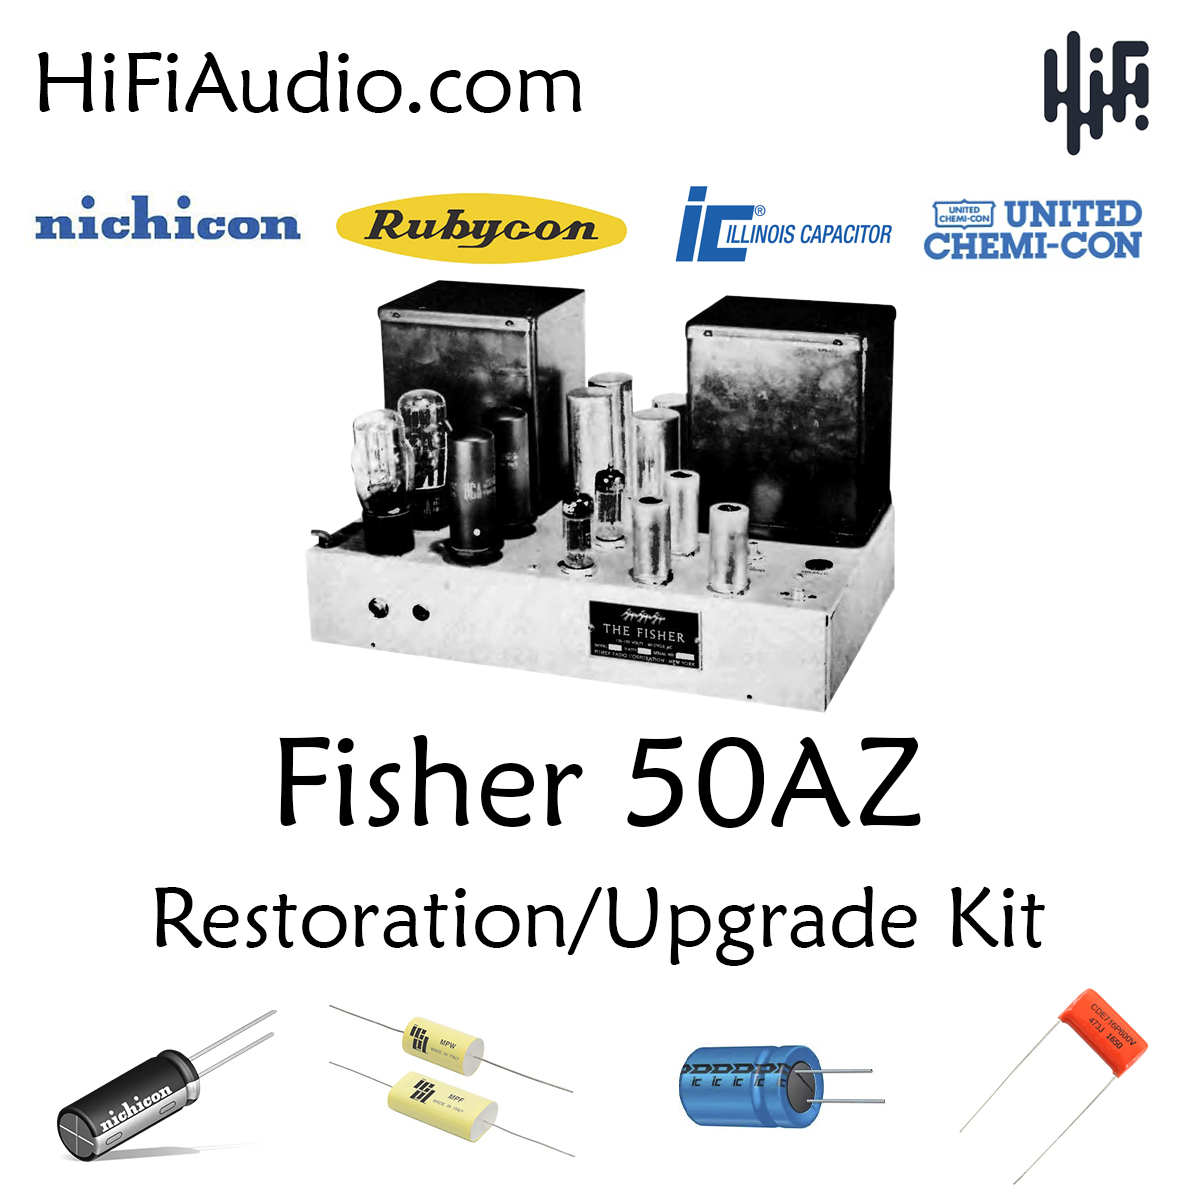 Fisher 50az restoration kit